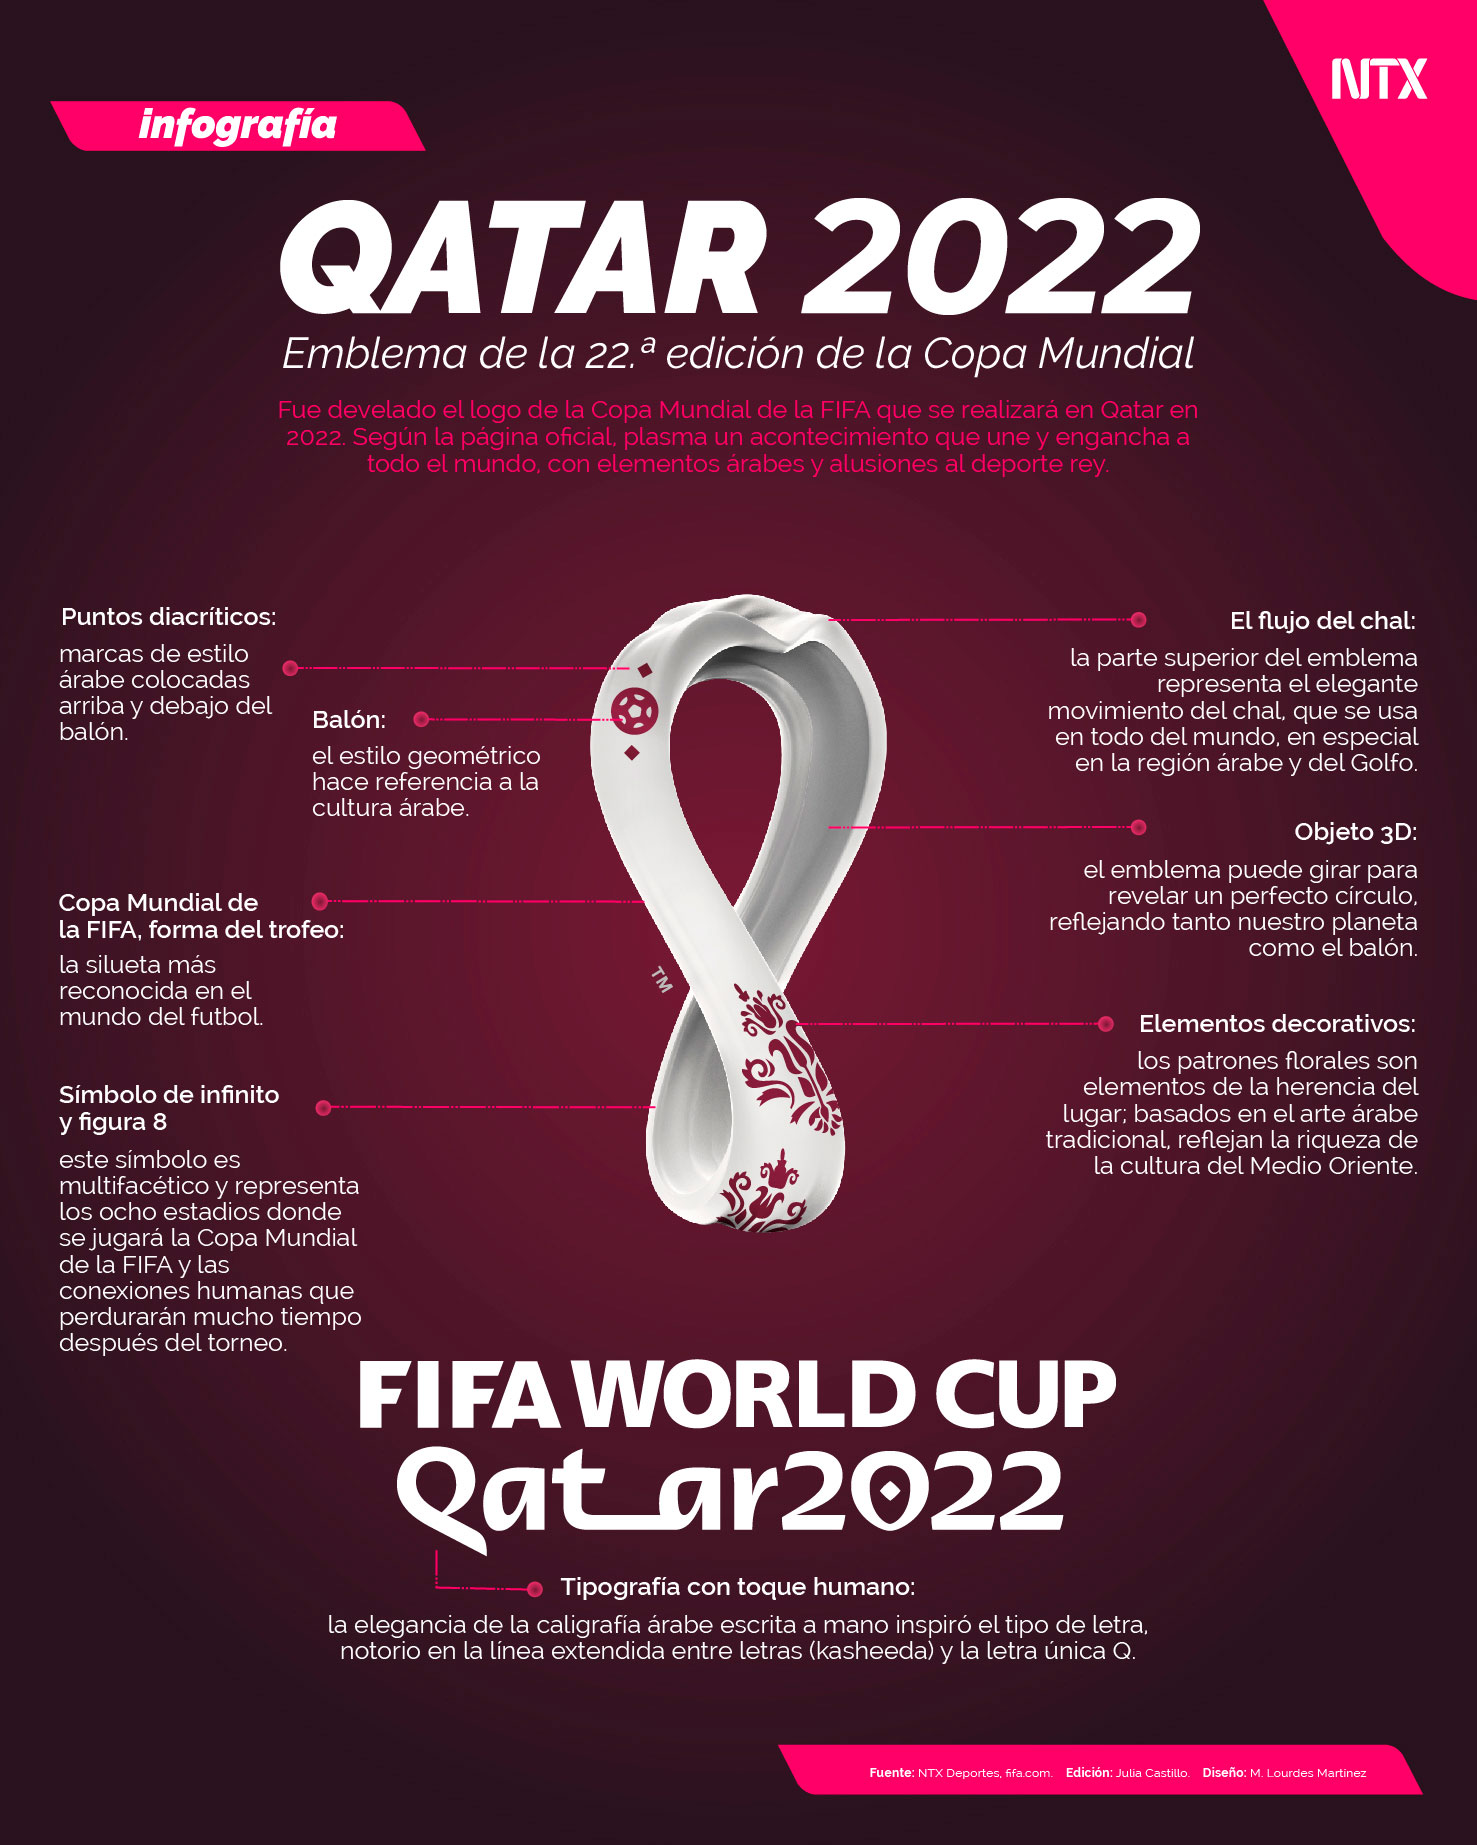 Qatar 2022, emblema de la 22. edicin de la Copa Mundial